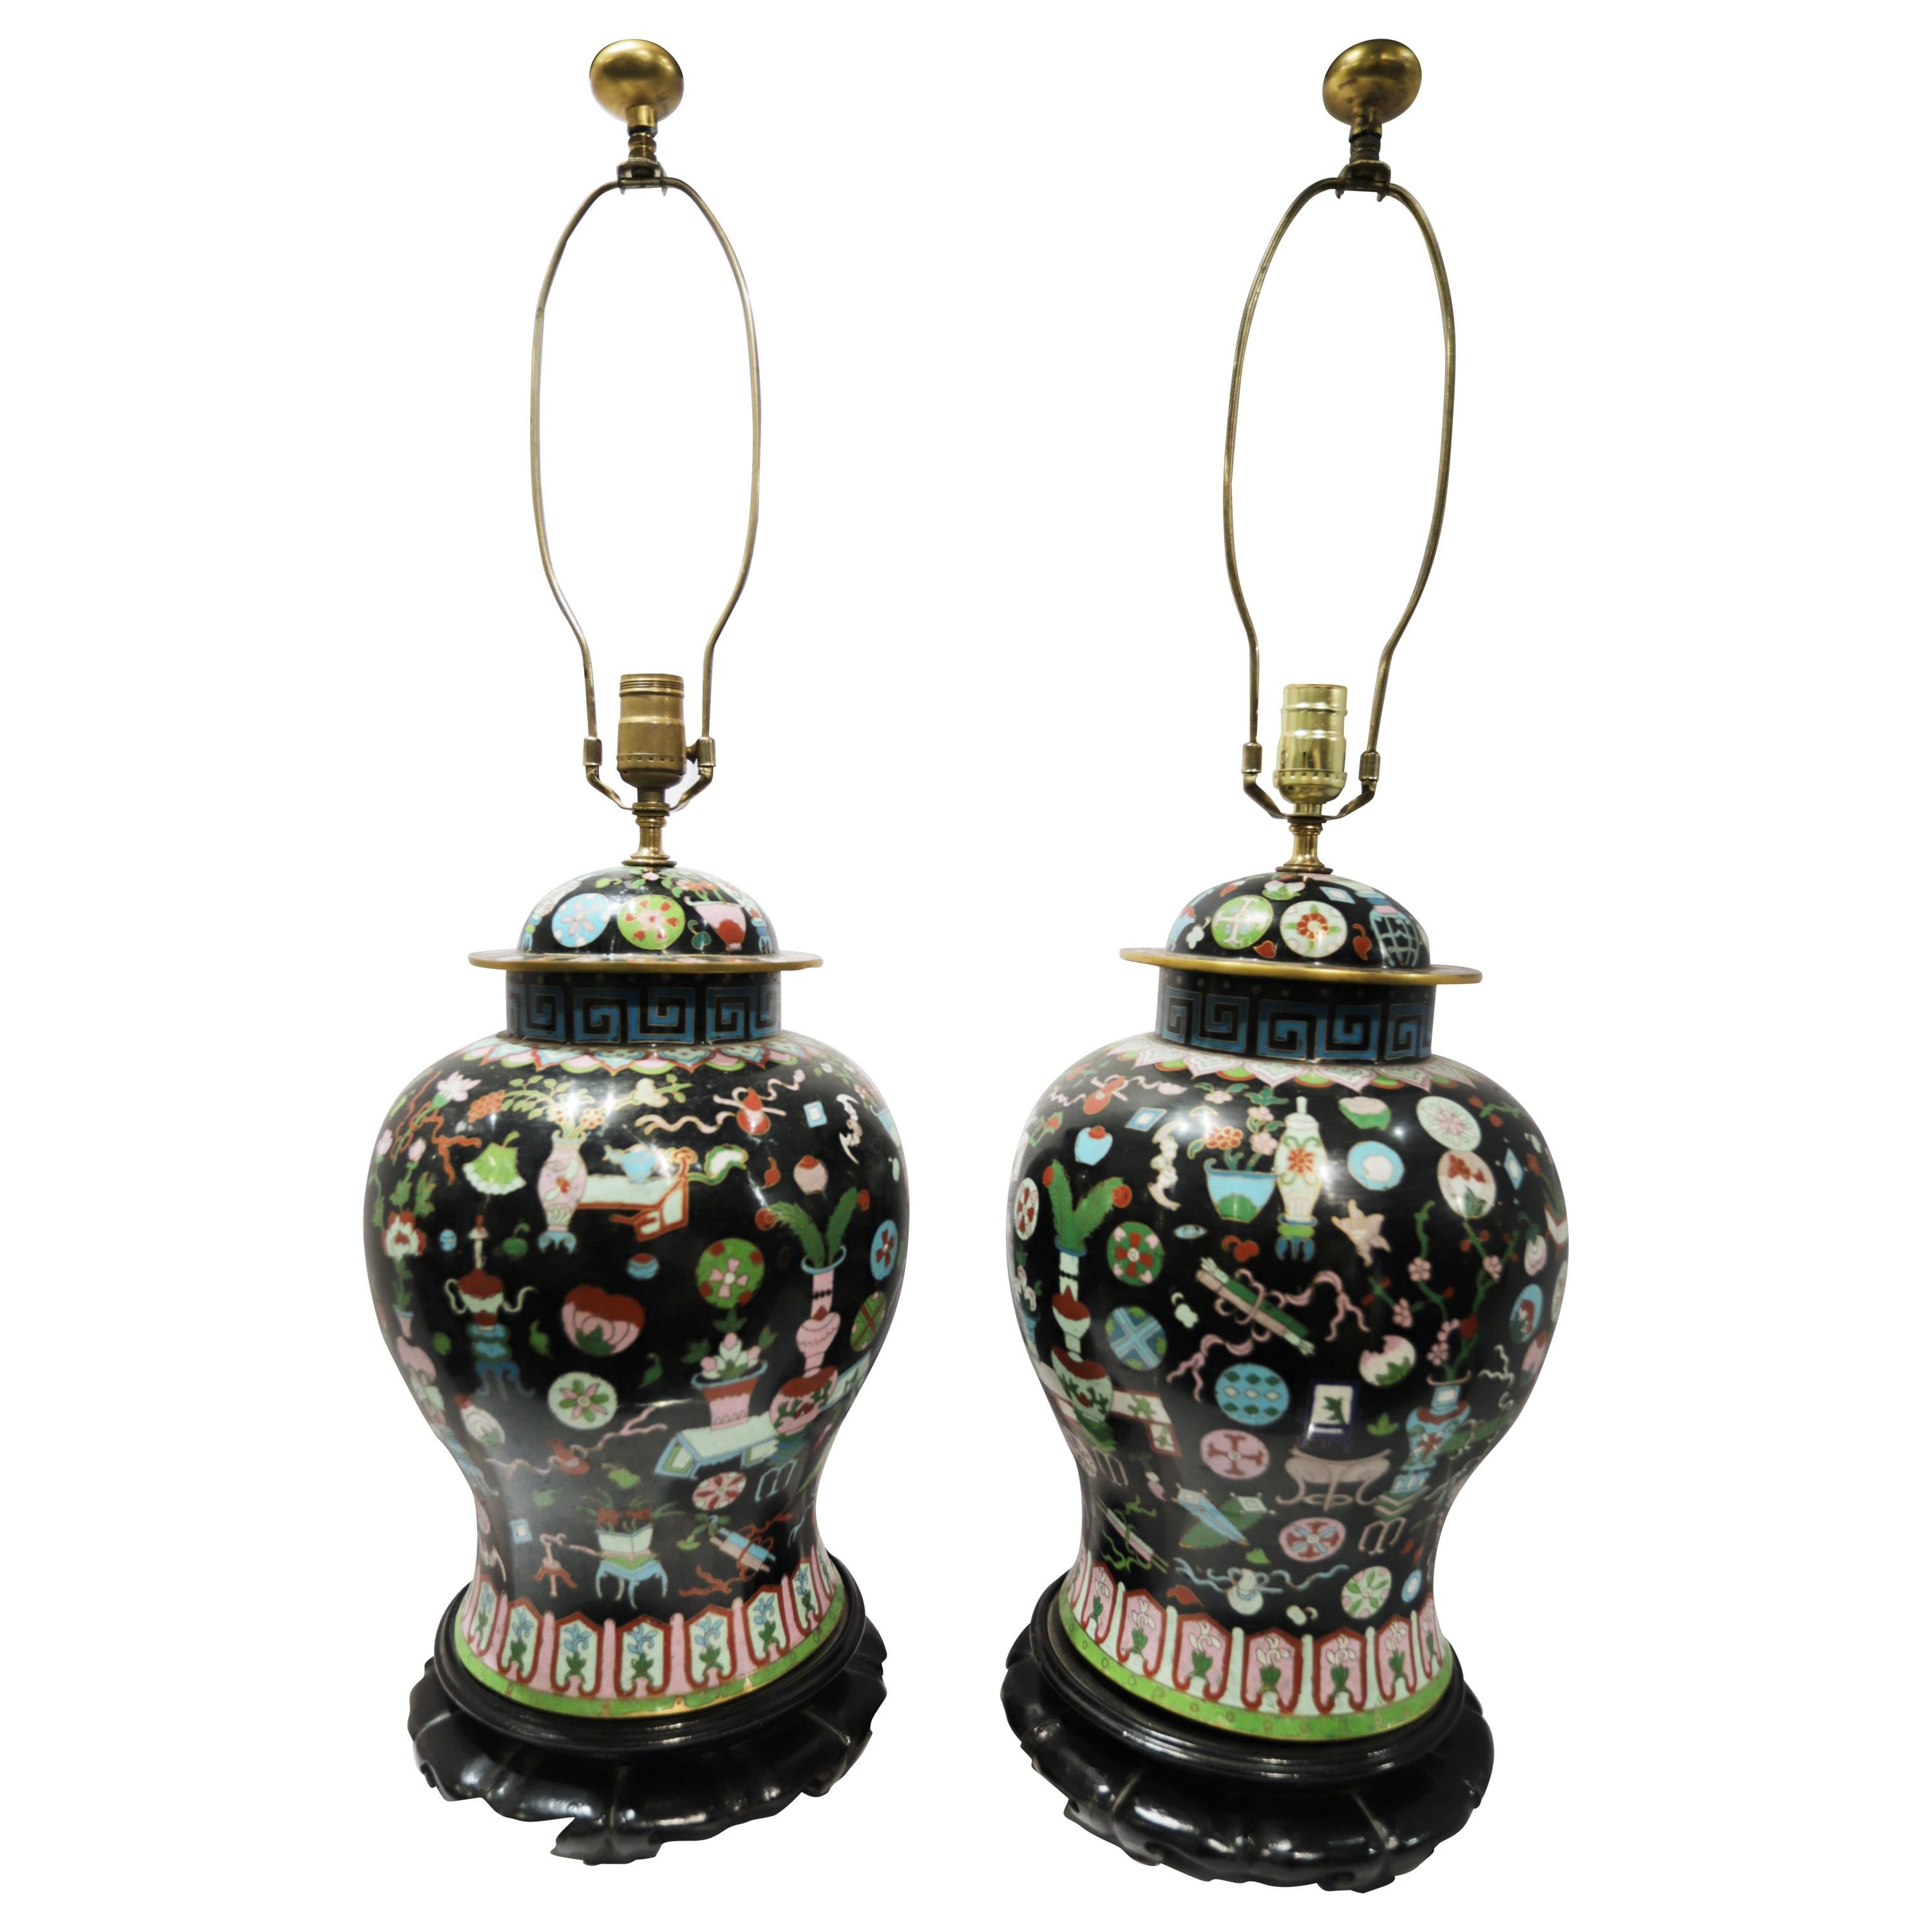 Pair of Chinese Closene Lamps